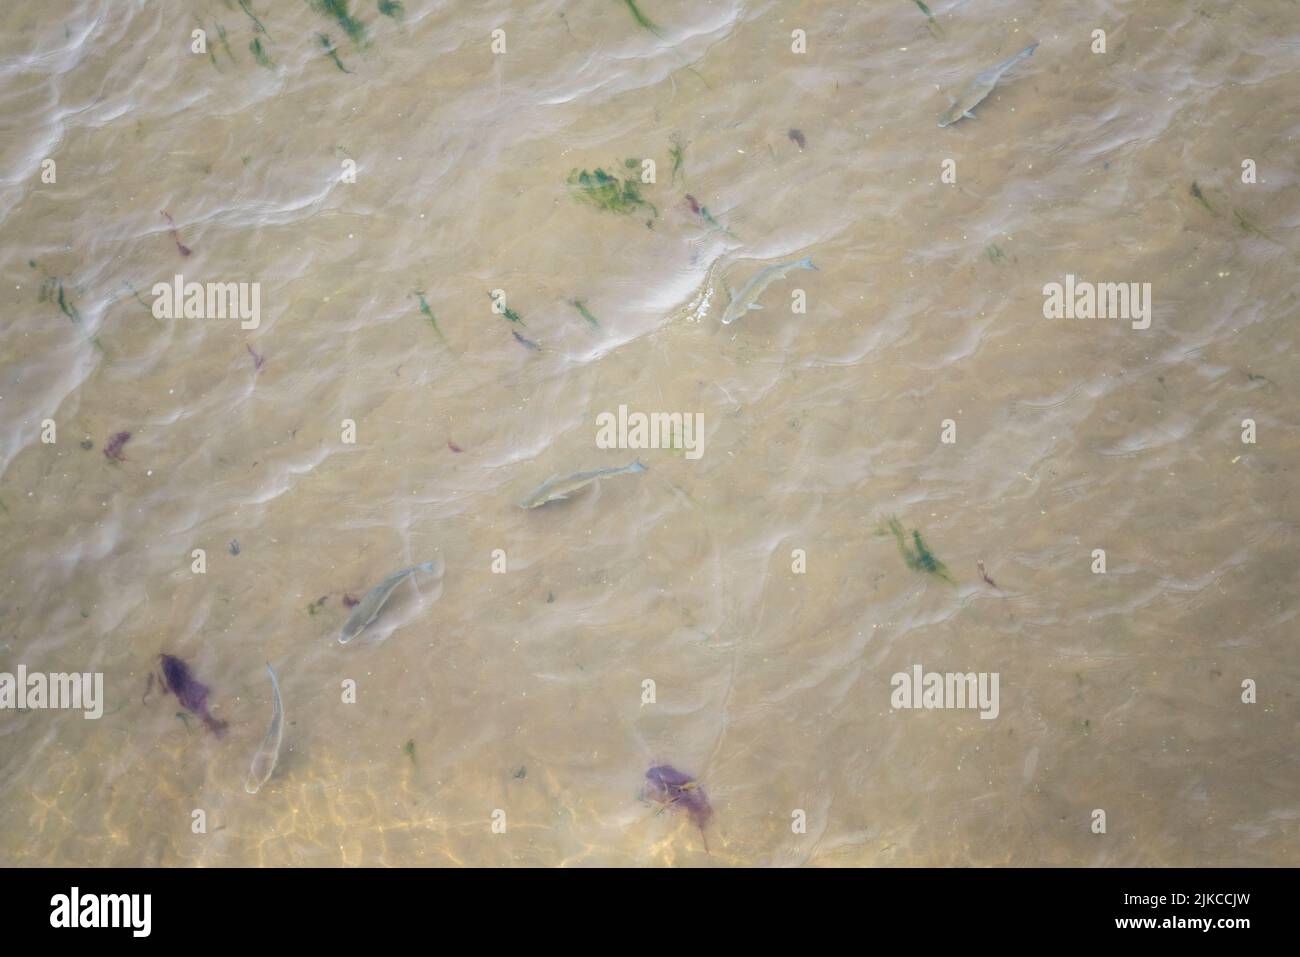 Grands poissons nageant dans des eaux peu profondes à marée basse au large de Southend on Sea, Essex, Royaume-Uni. Front de mer de boue avec algues. Vue de dessus Banque D'Images